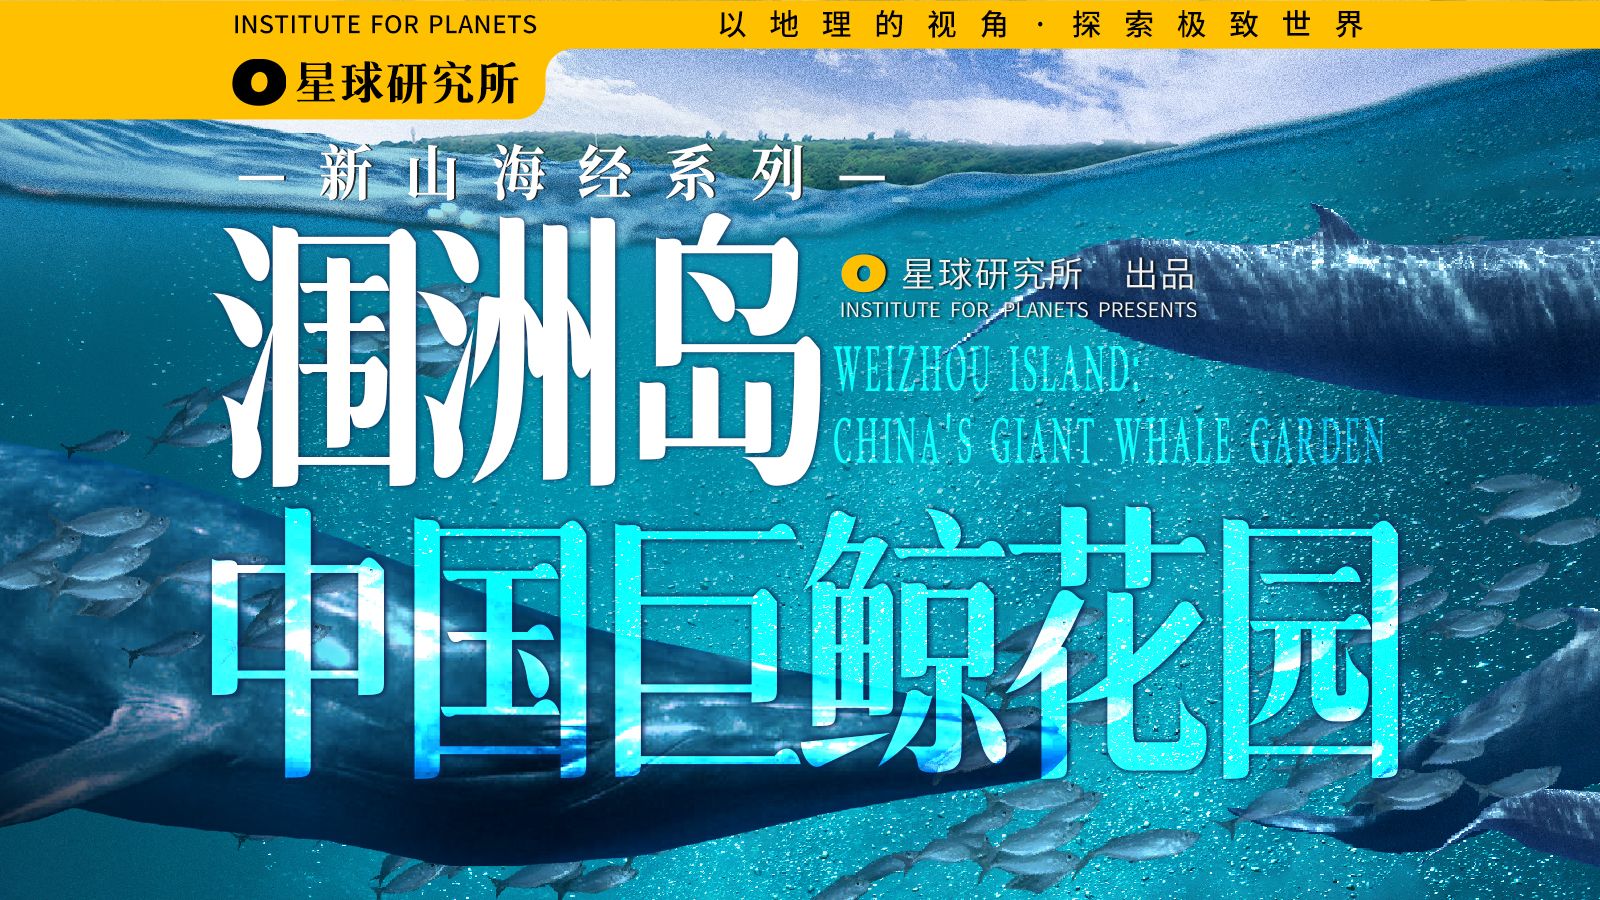 见鲸鱼接好运！在广西涠洲岛，发现中国巨鲸花园【新山海经01】【4K】